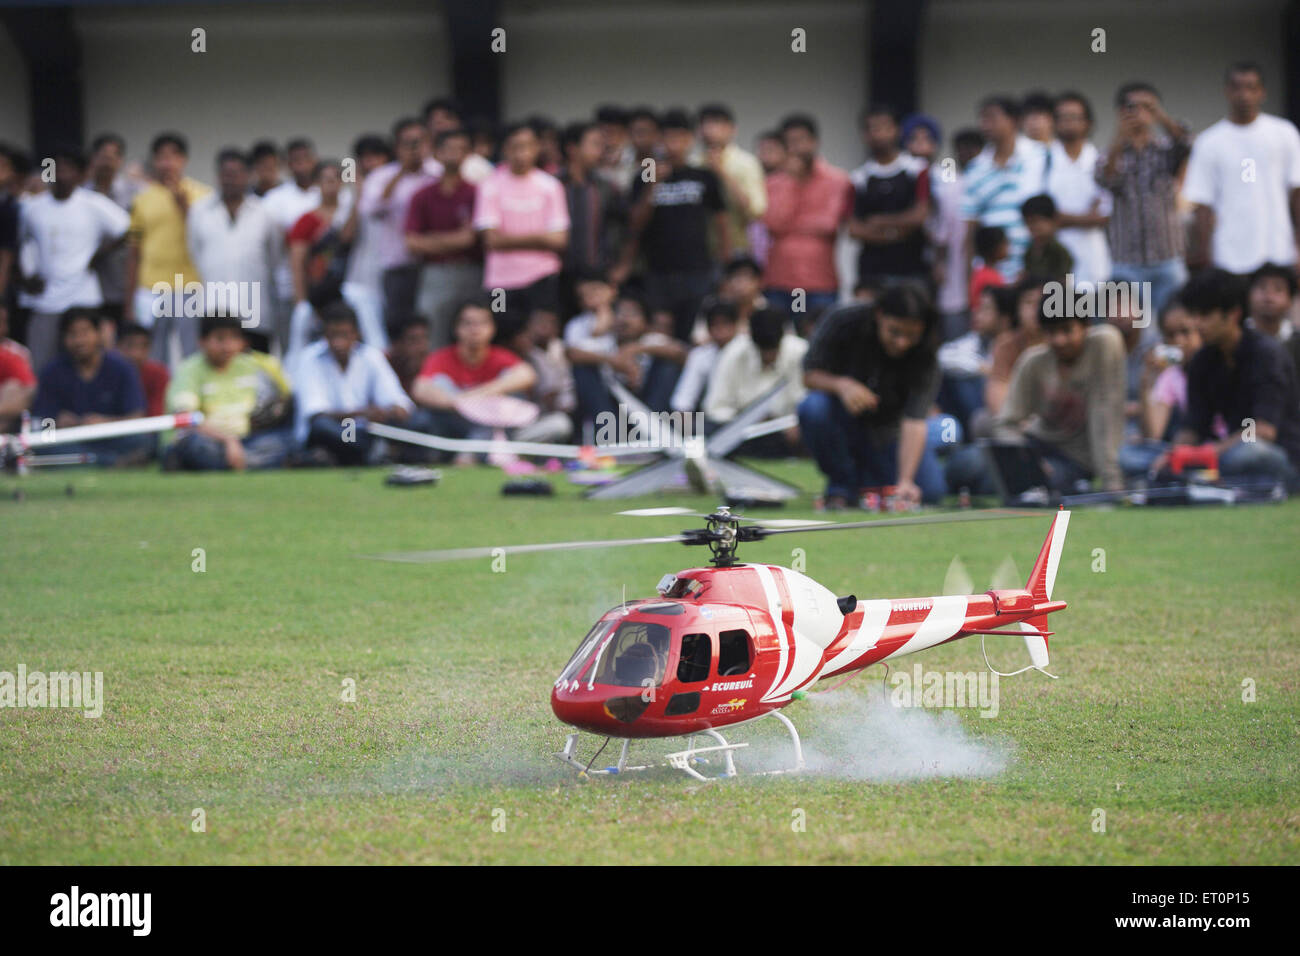 Spectacle d'Aeromodeling, modèle d'hélicoptère aérodynamique, Powai, Bombay, Mumbai, Maharashtra, Inde Banque D'Images